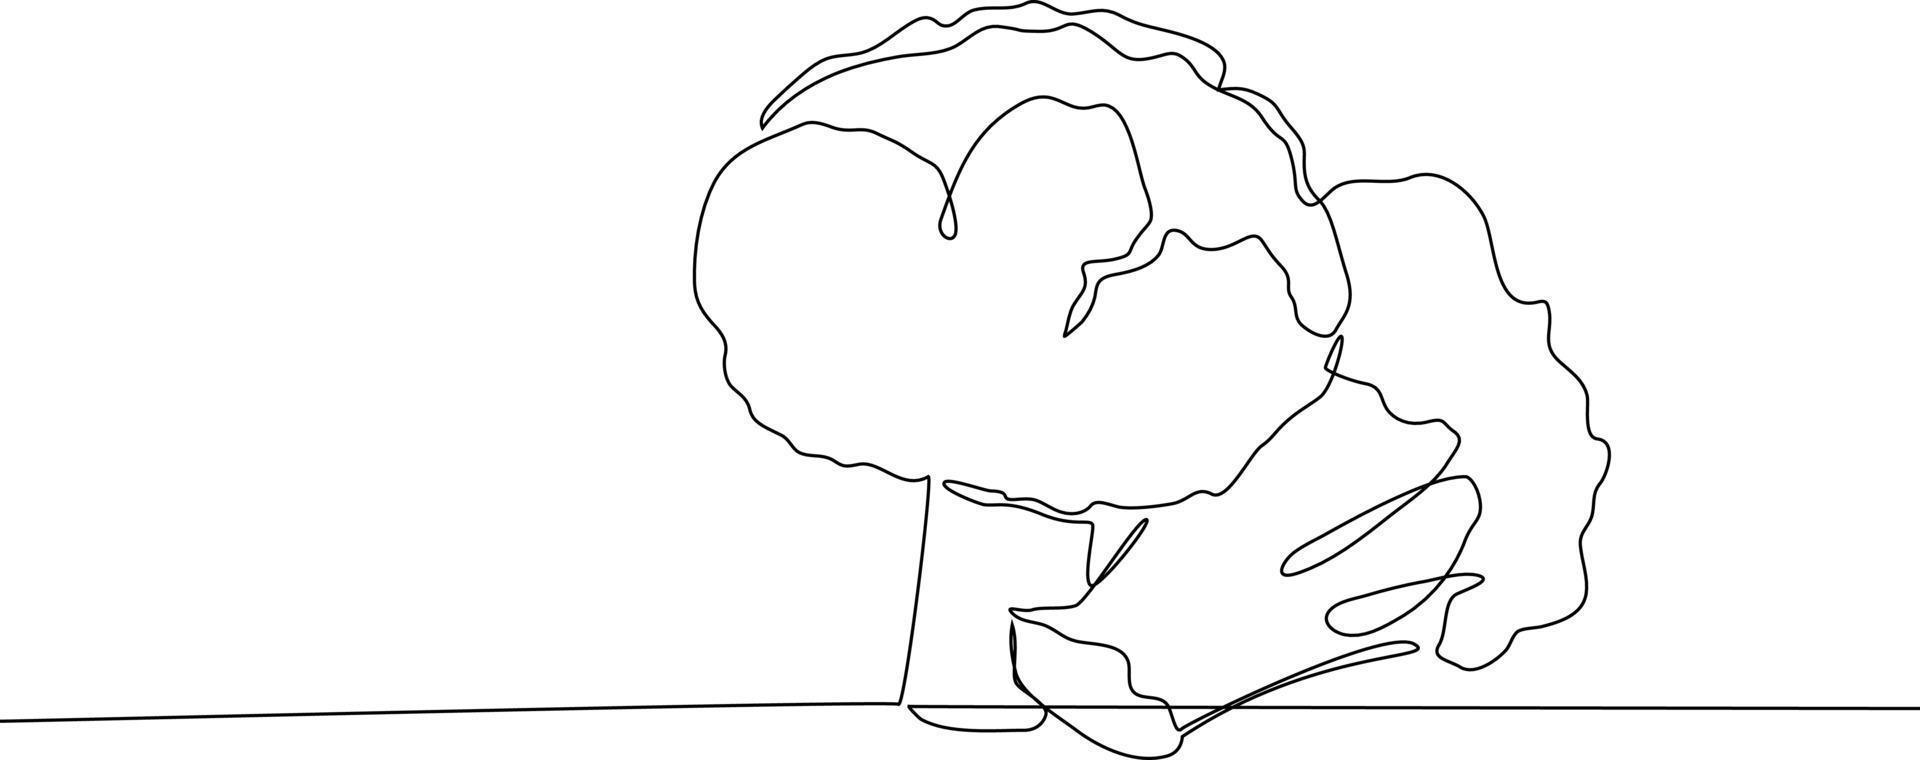 soltero una línea dibujo de dos piezas de brócoli en el mesa. hierbas y especias concepto. continuo línea dibujo diseño gráfico vector ilustración.